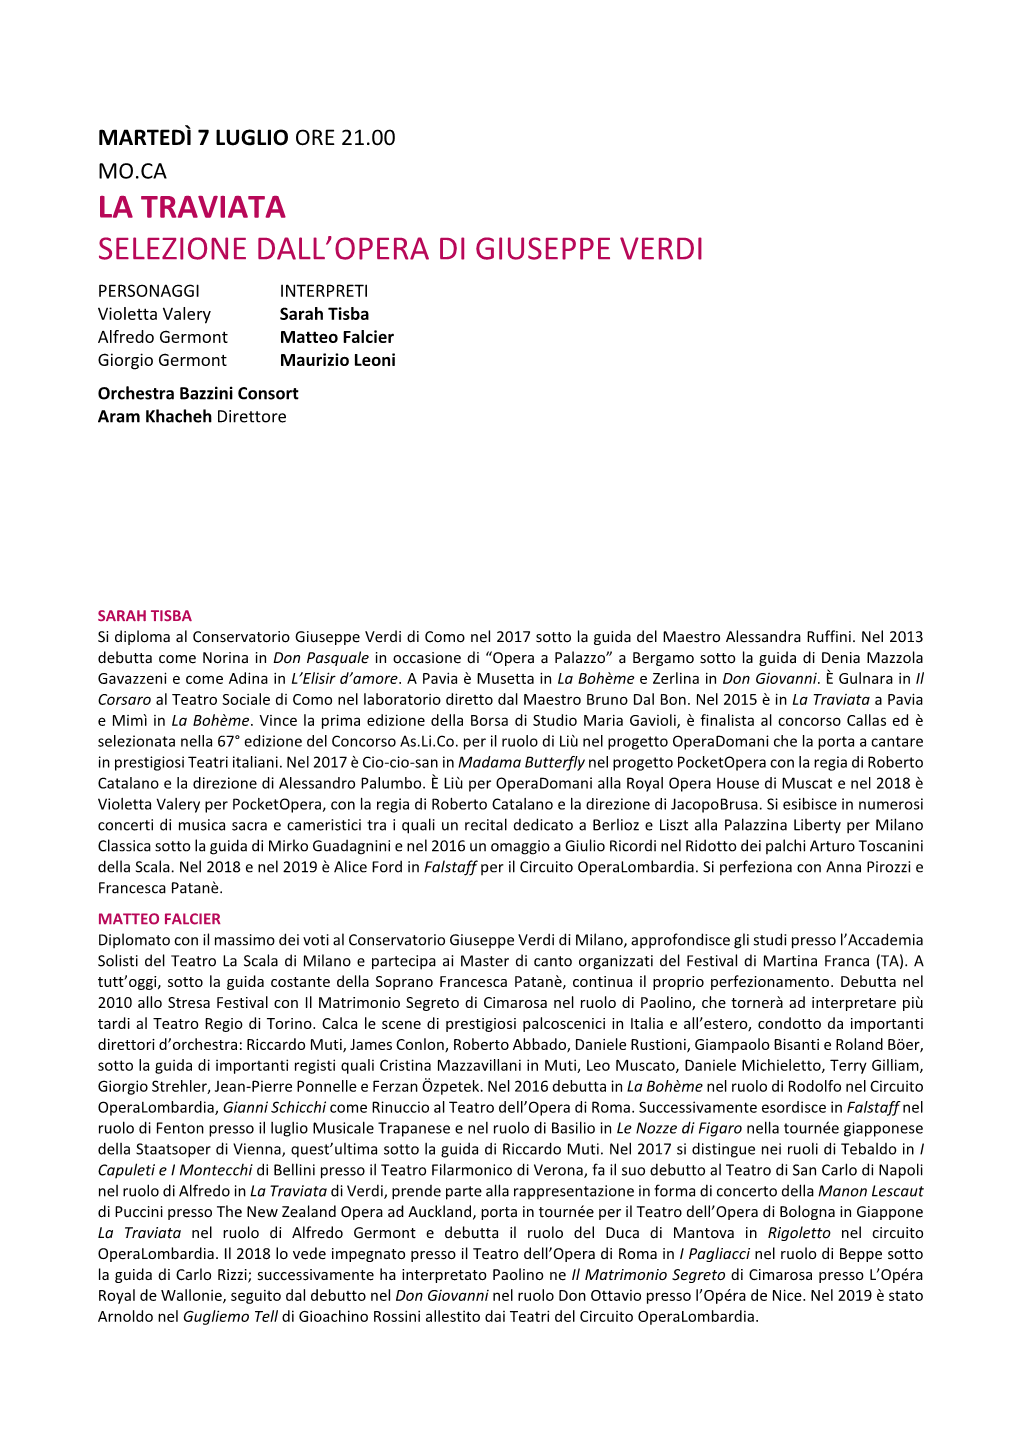 La Traviata Selezione Dall'opera Di Giuseppe Verdi